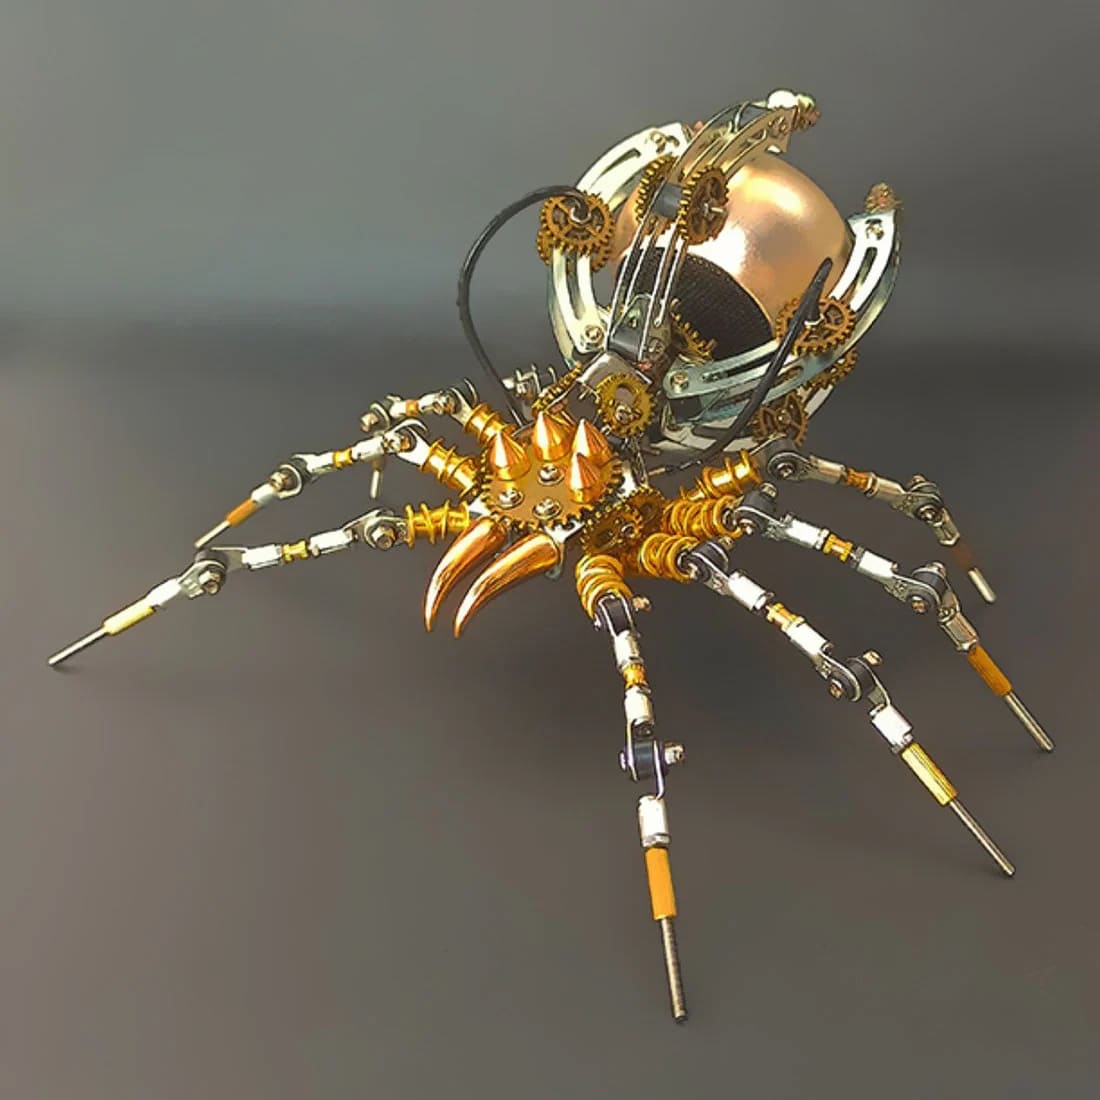 3D-pulma lapsille ja aikuisille hämähäkille